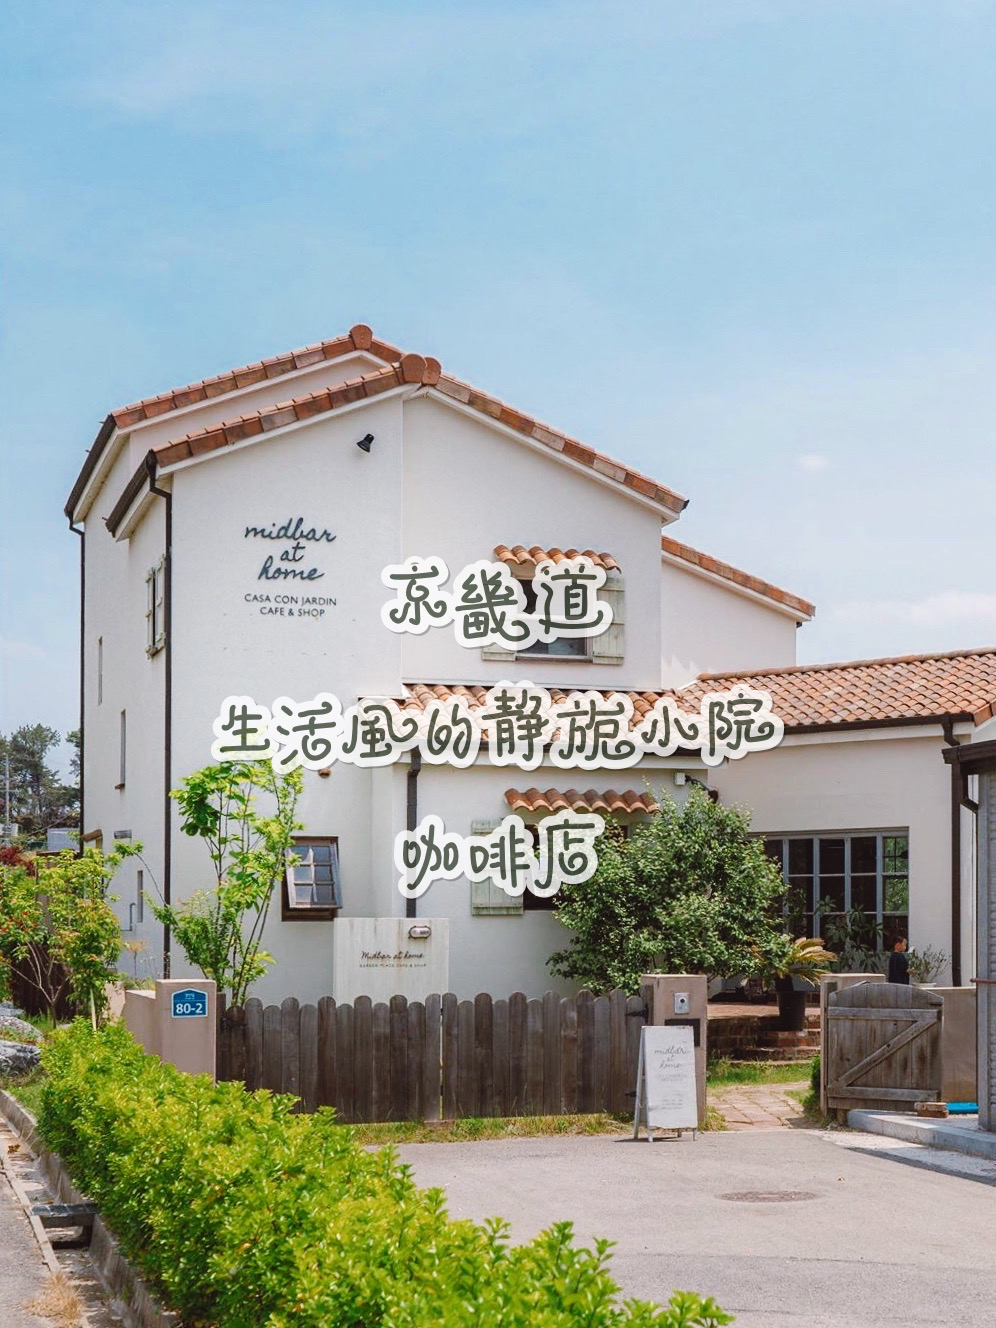 不只是咖啡店，也售卖生活方式~ 京畿道미드바르앳홈 在这里 有精心打理的庭院， 自焙豆子分咖啡，手作